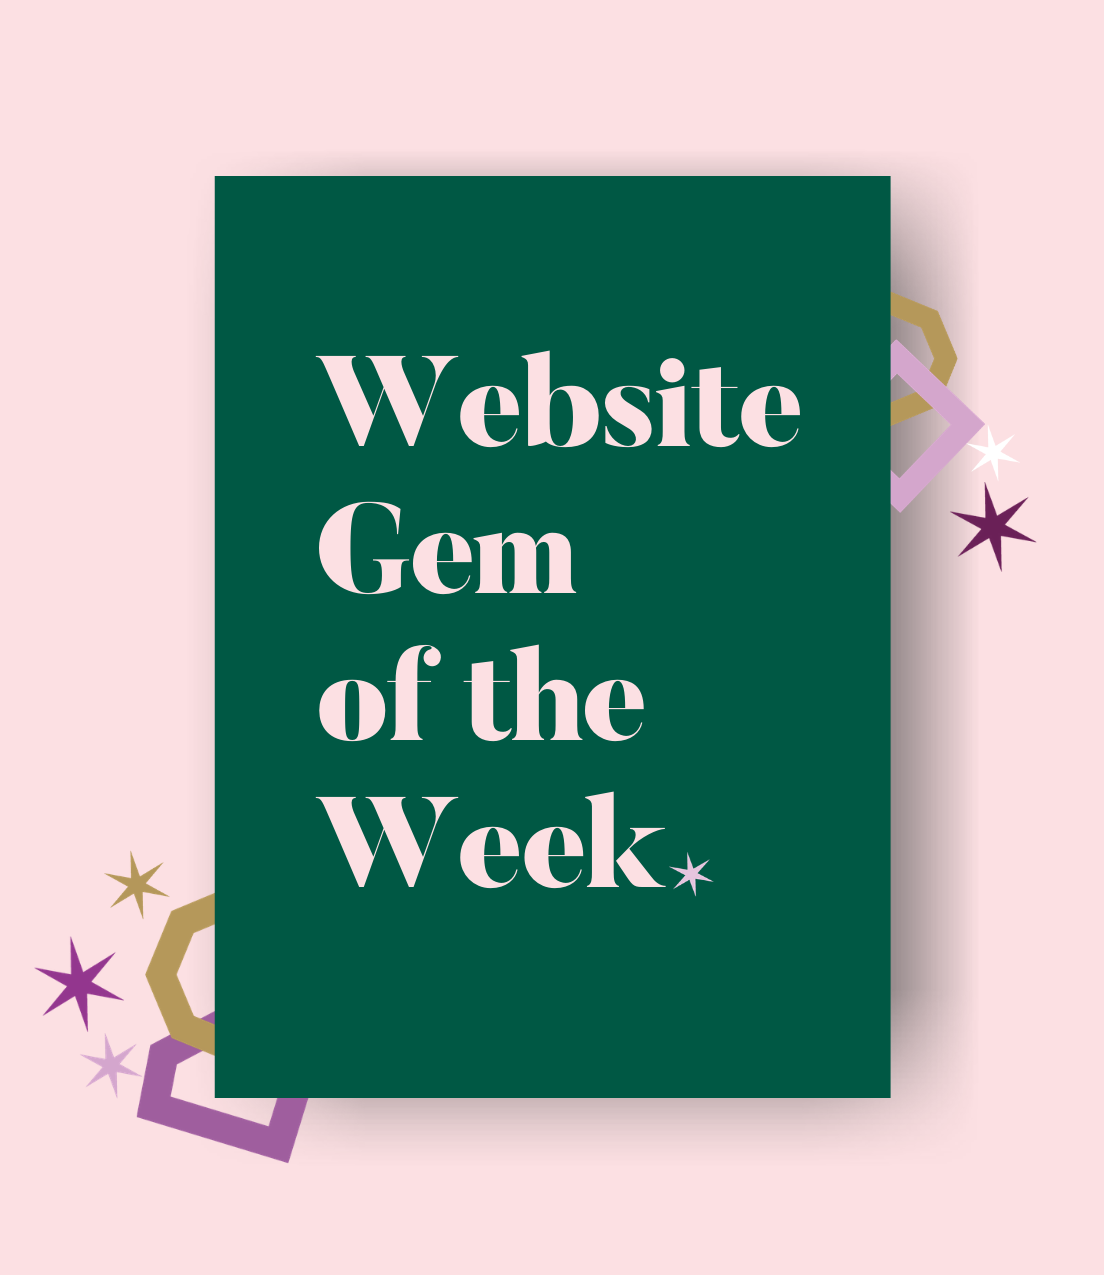 Image of Gem of the Week on Website